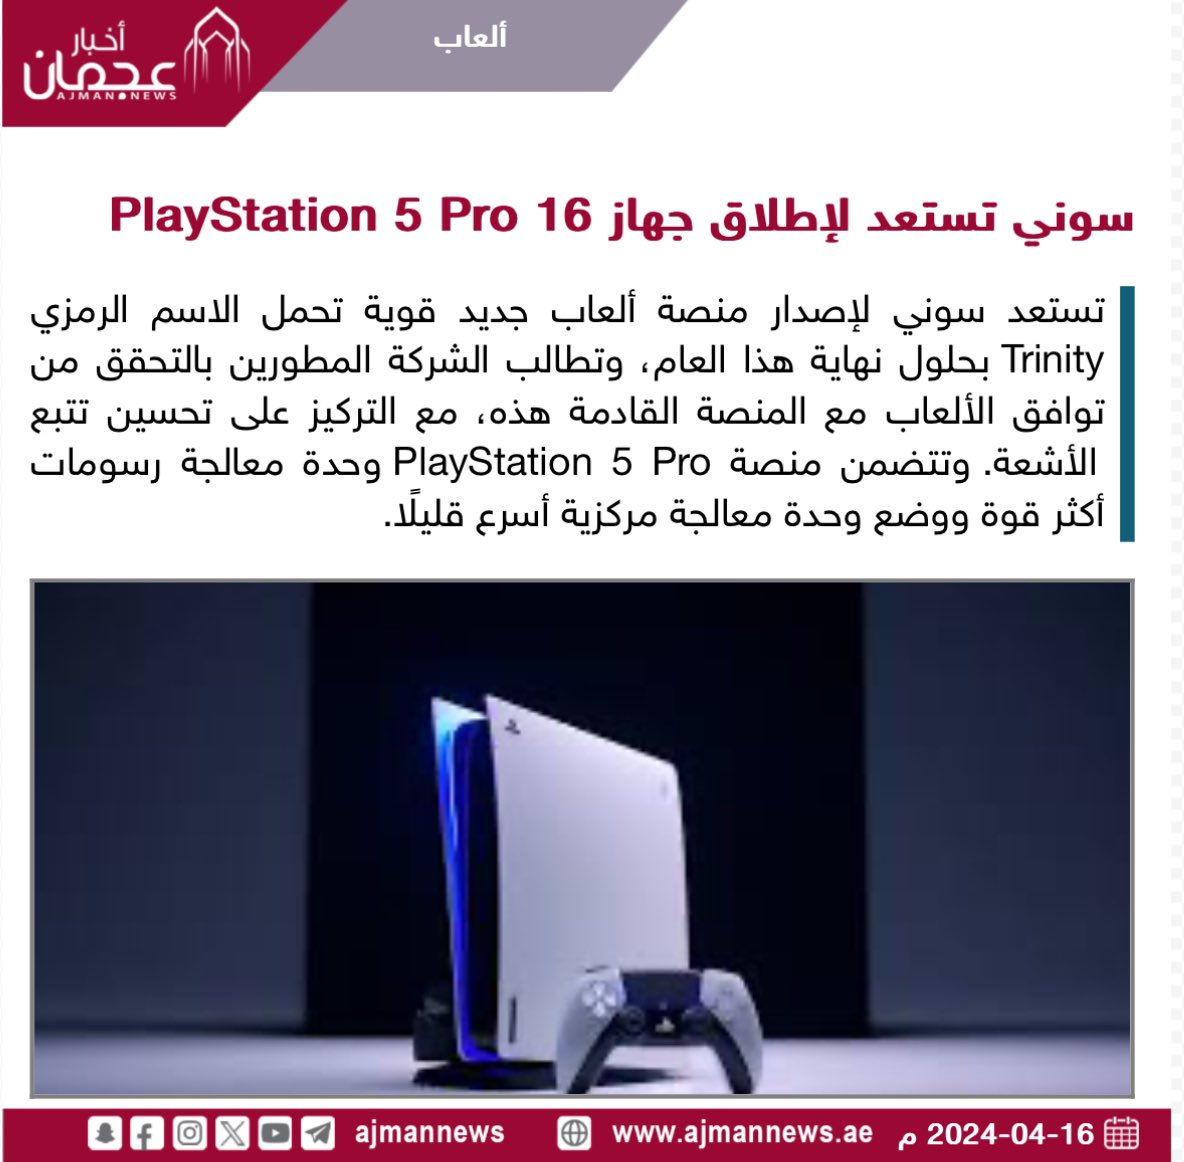 سوني تستعد لإطلاق جهاز PlayStation 5 Pro  16  ajmannews.ae/120968 #أخبار_الألعاب  #ألعاب_إلكترونية  #ألعاب  #أخبار